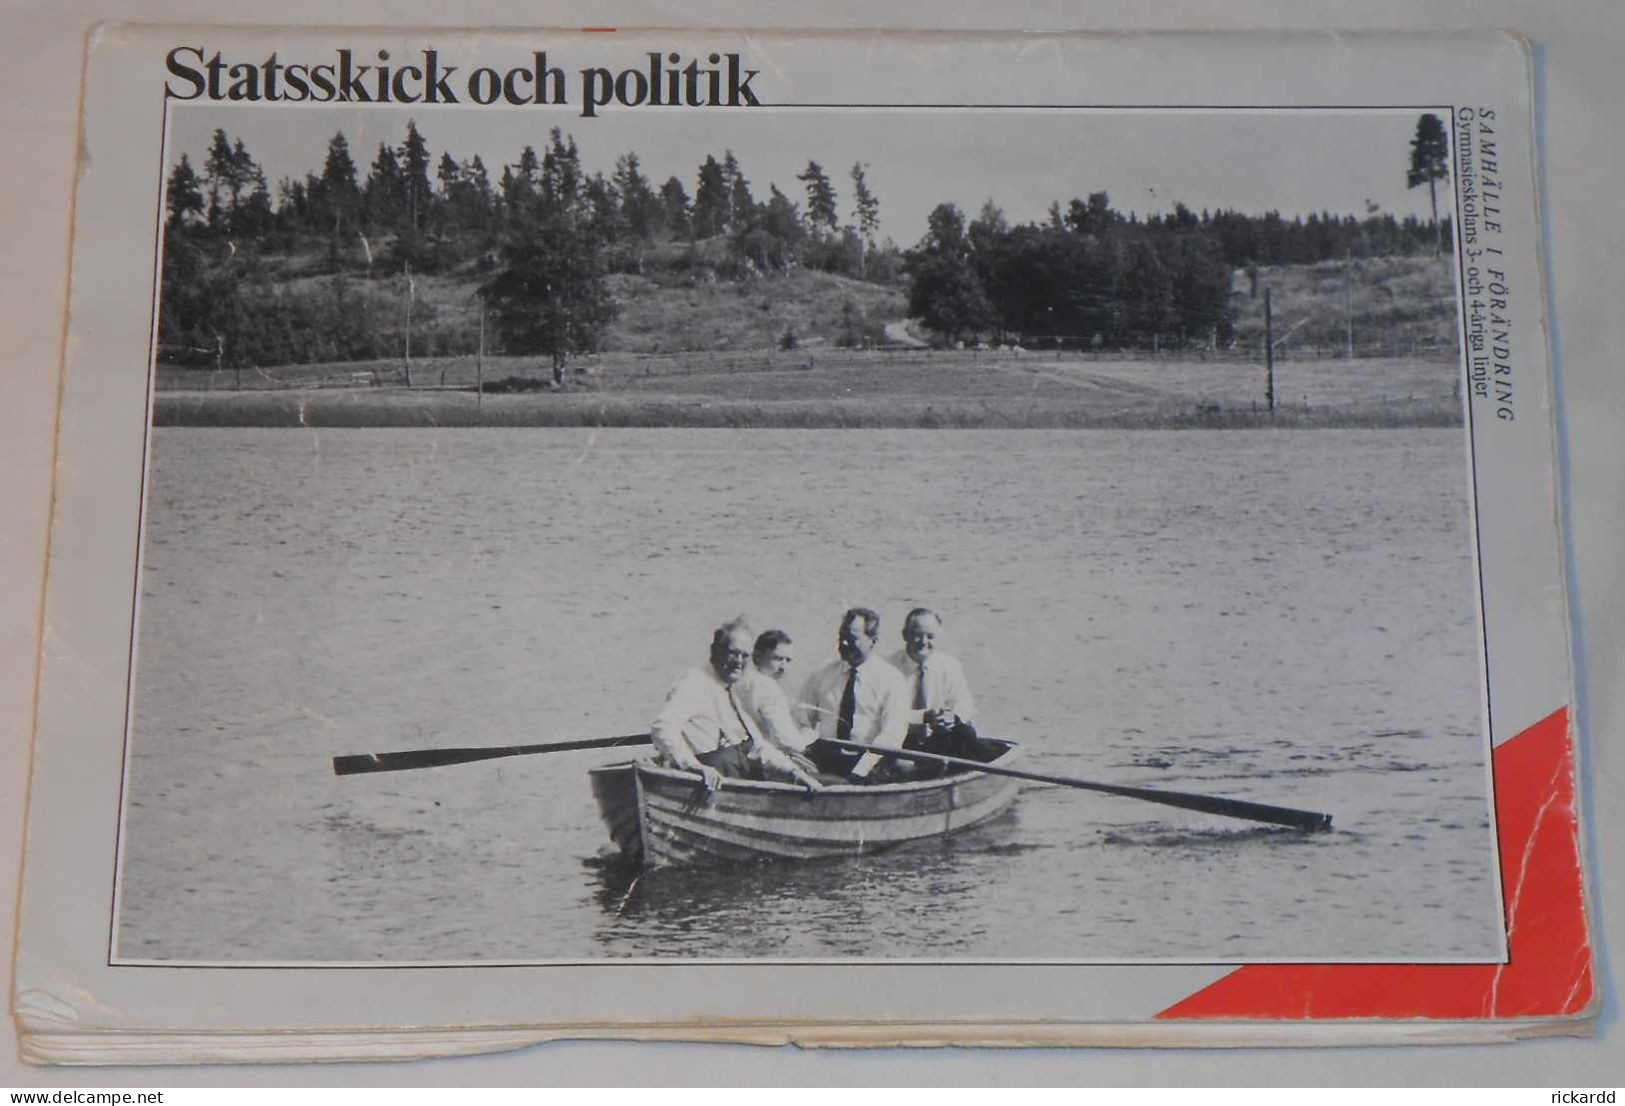 Samhälle I Förändring - Statsskick Och Politik Av Gösta Haapaniemi & Clarence Nilsson; Från 80-talet - Lingue Scandinave